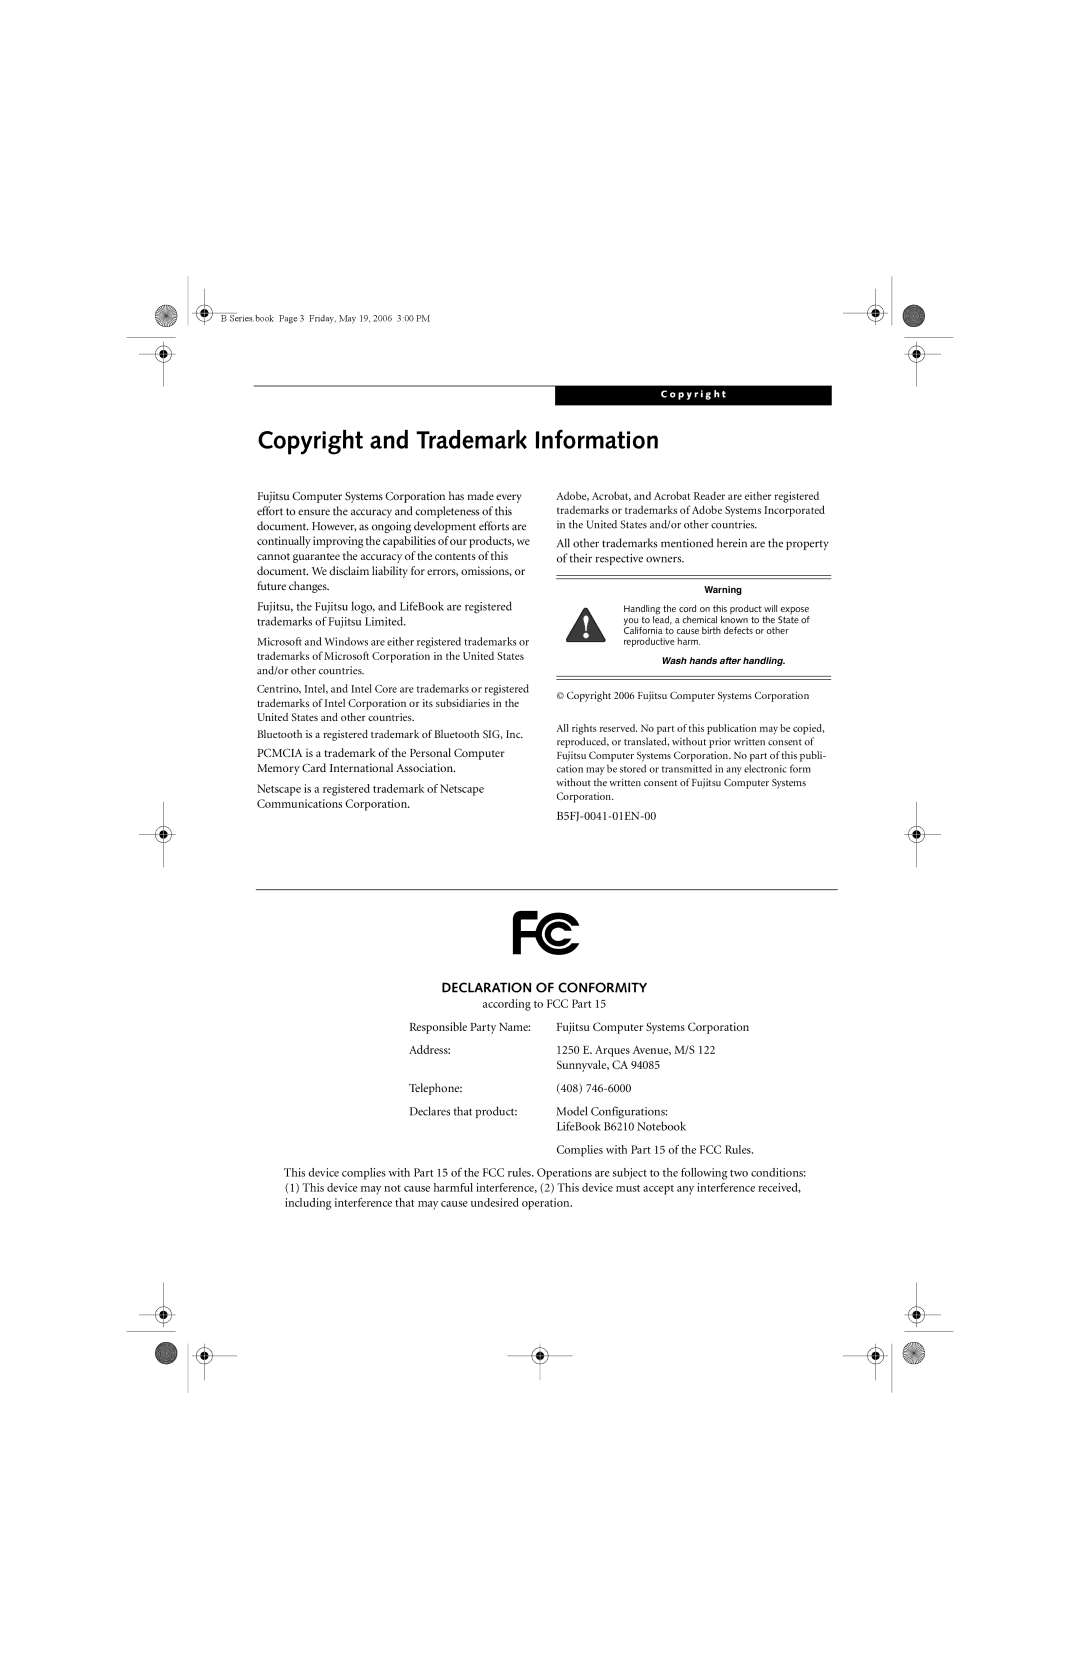 Fujitsu Siemens Computers B6210 manual Copyright and Trademark Information, Declaration of Conformity, B5FJ-0041-01EN-00 